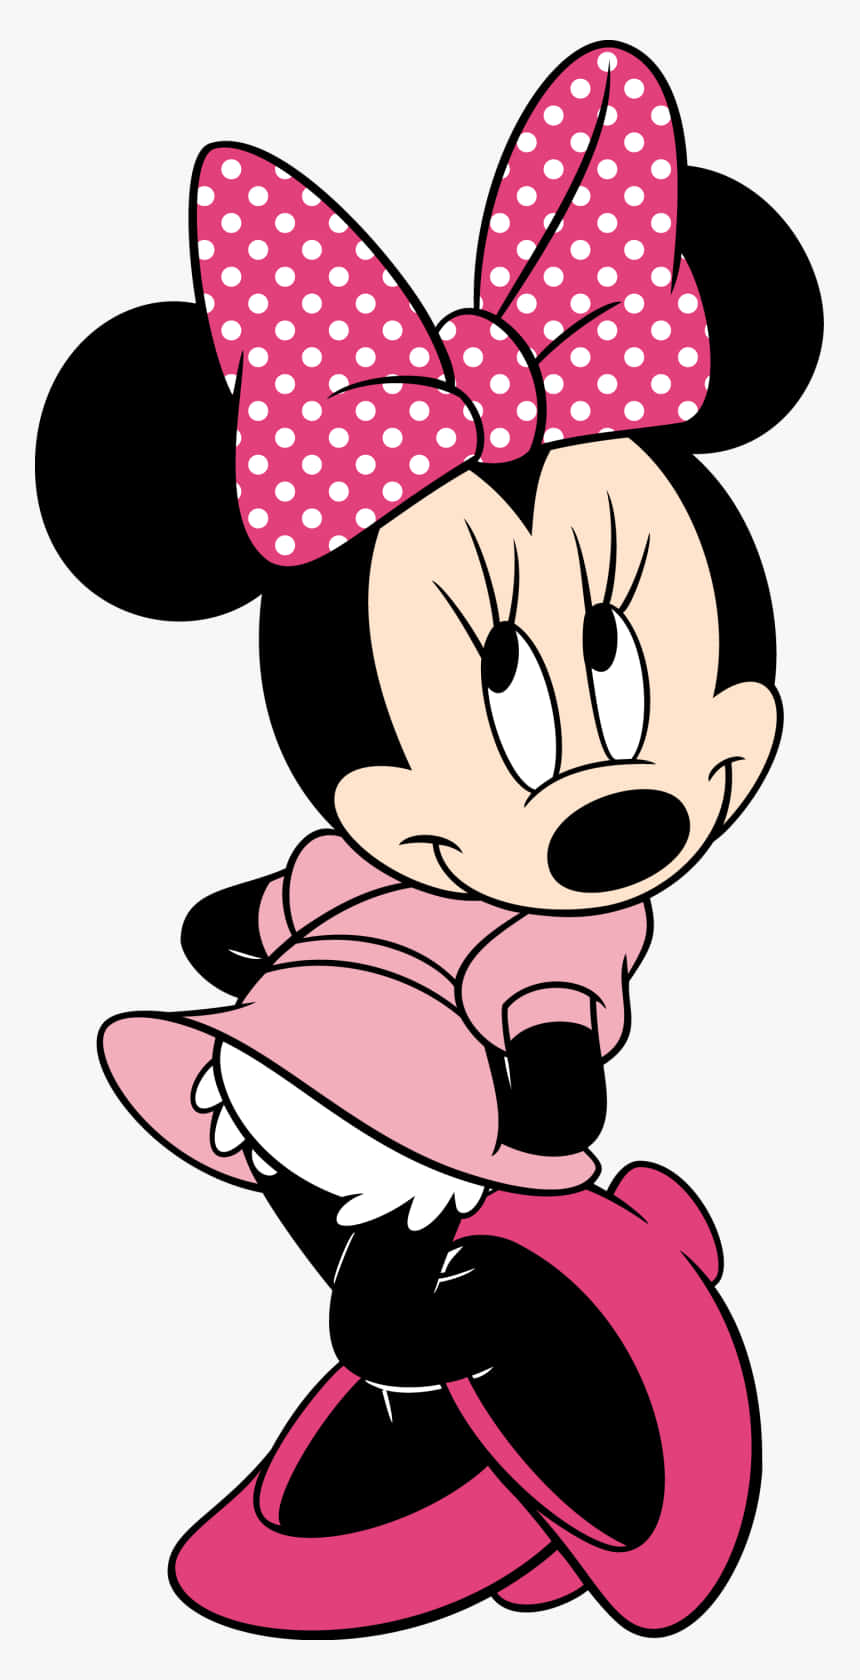 Kärlekenär I Luften Med Minnie Mouse I Rosa. Wallpaper